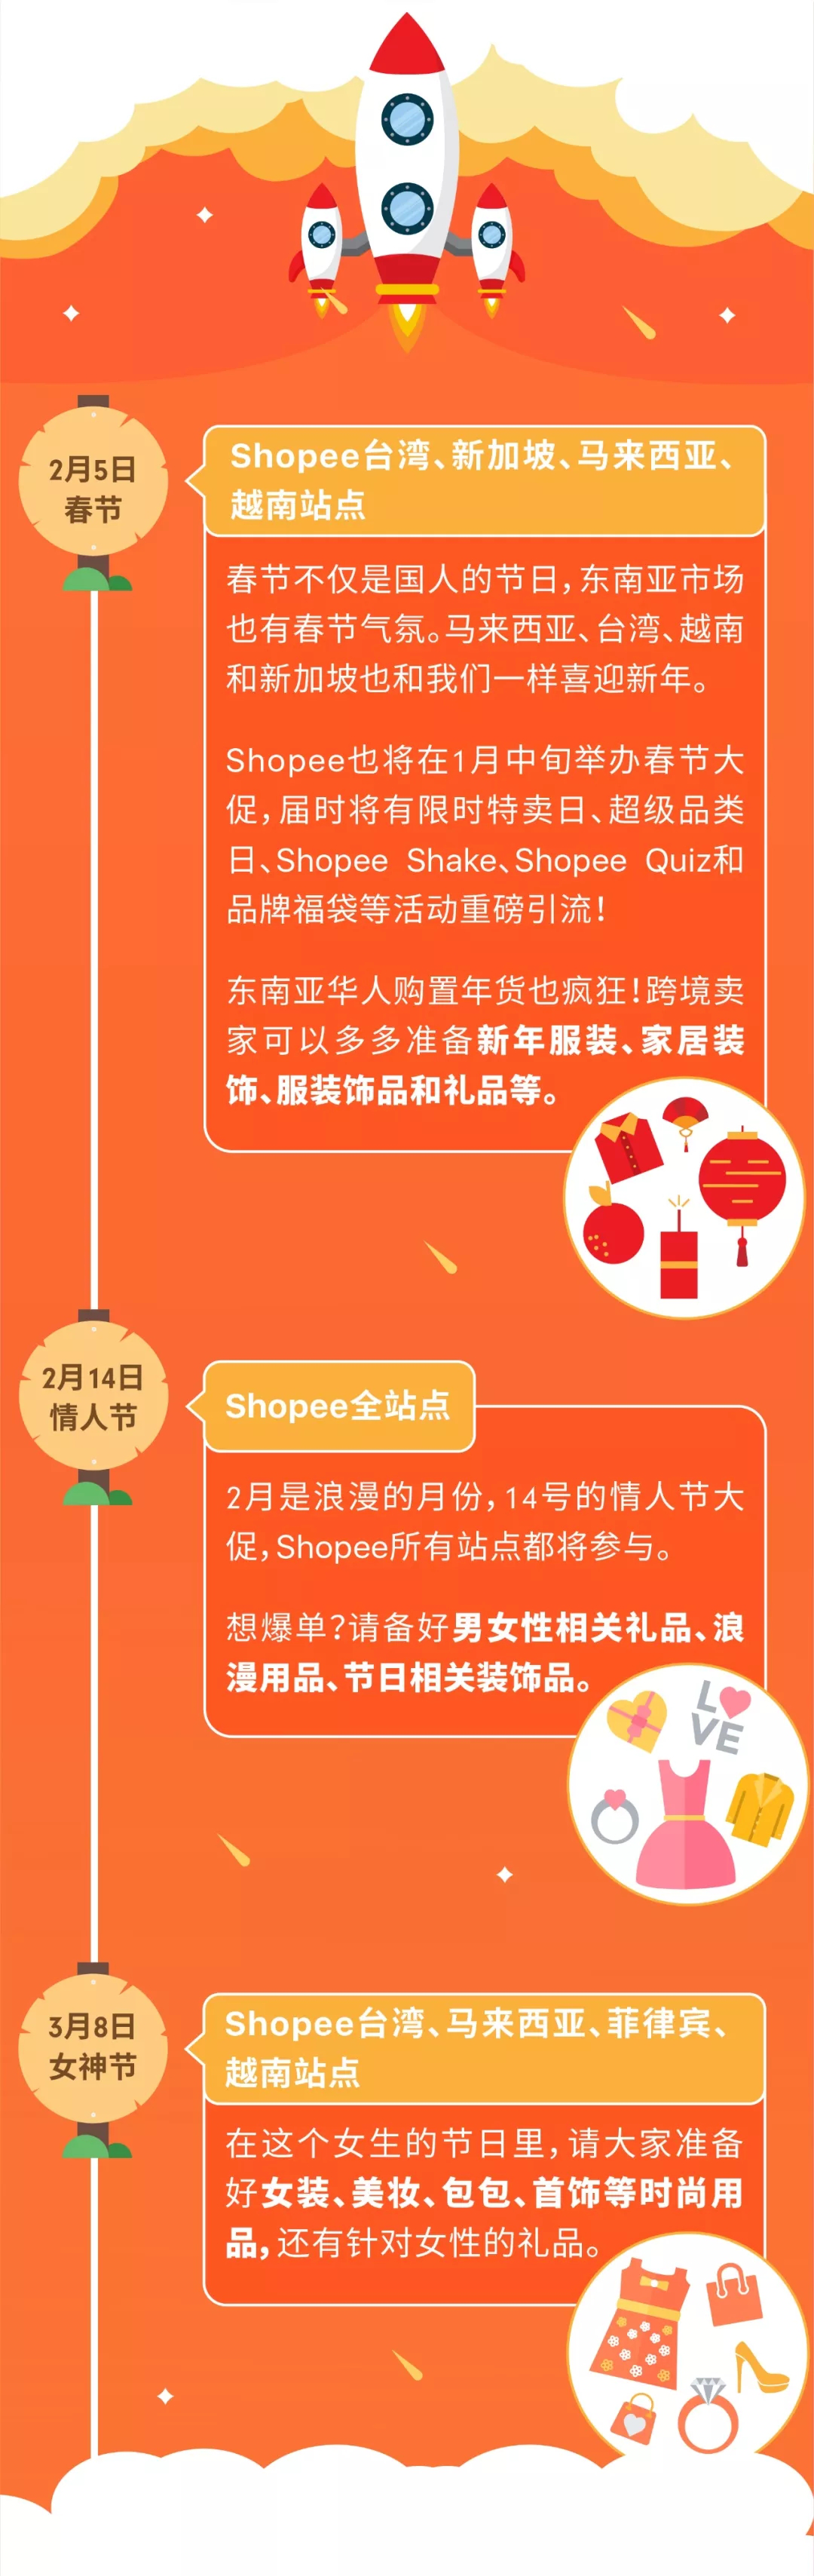 2019年Shopee各站点大促活动时间表_Shopee爆单日历和活动时间